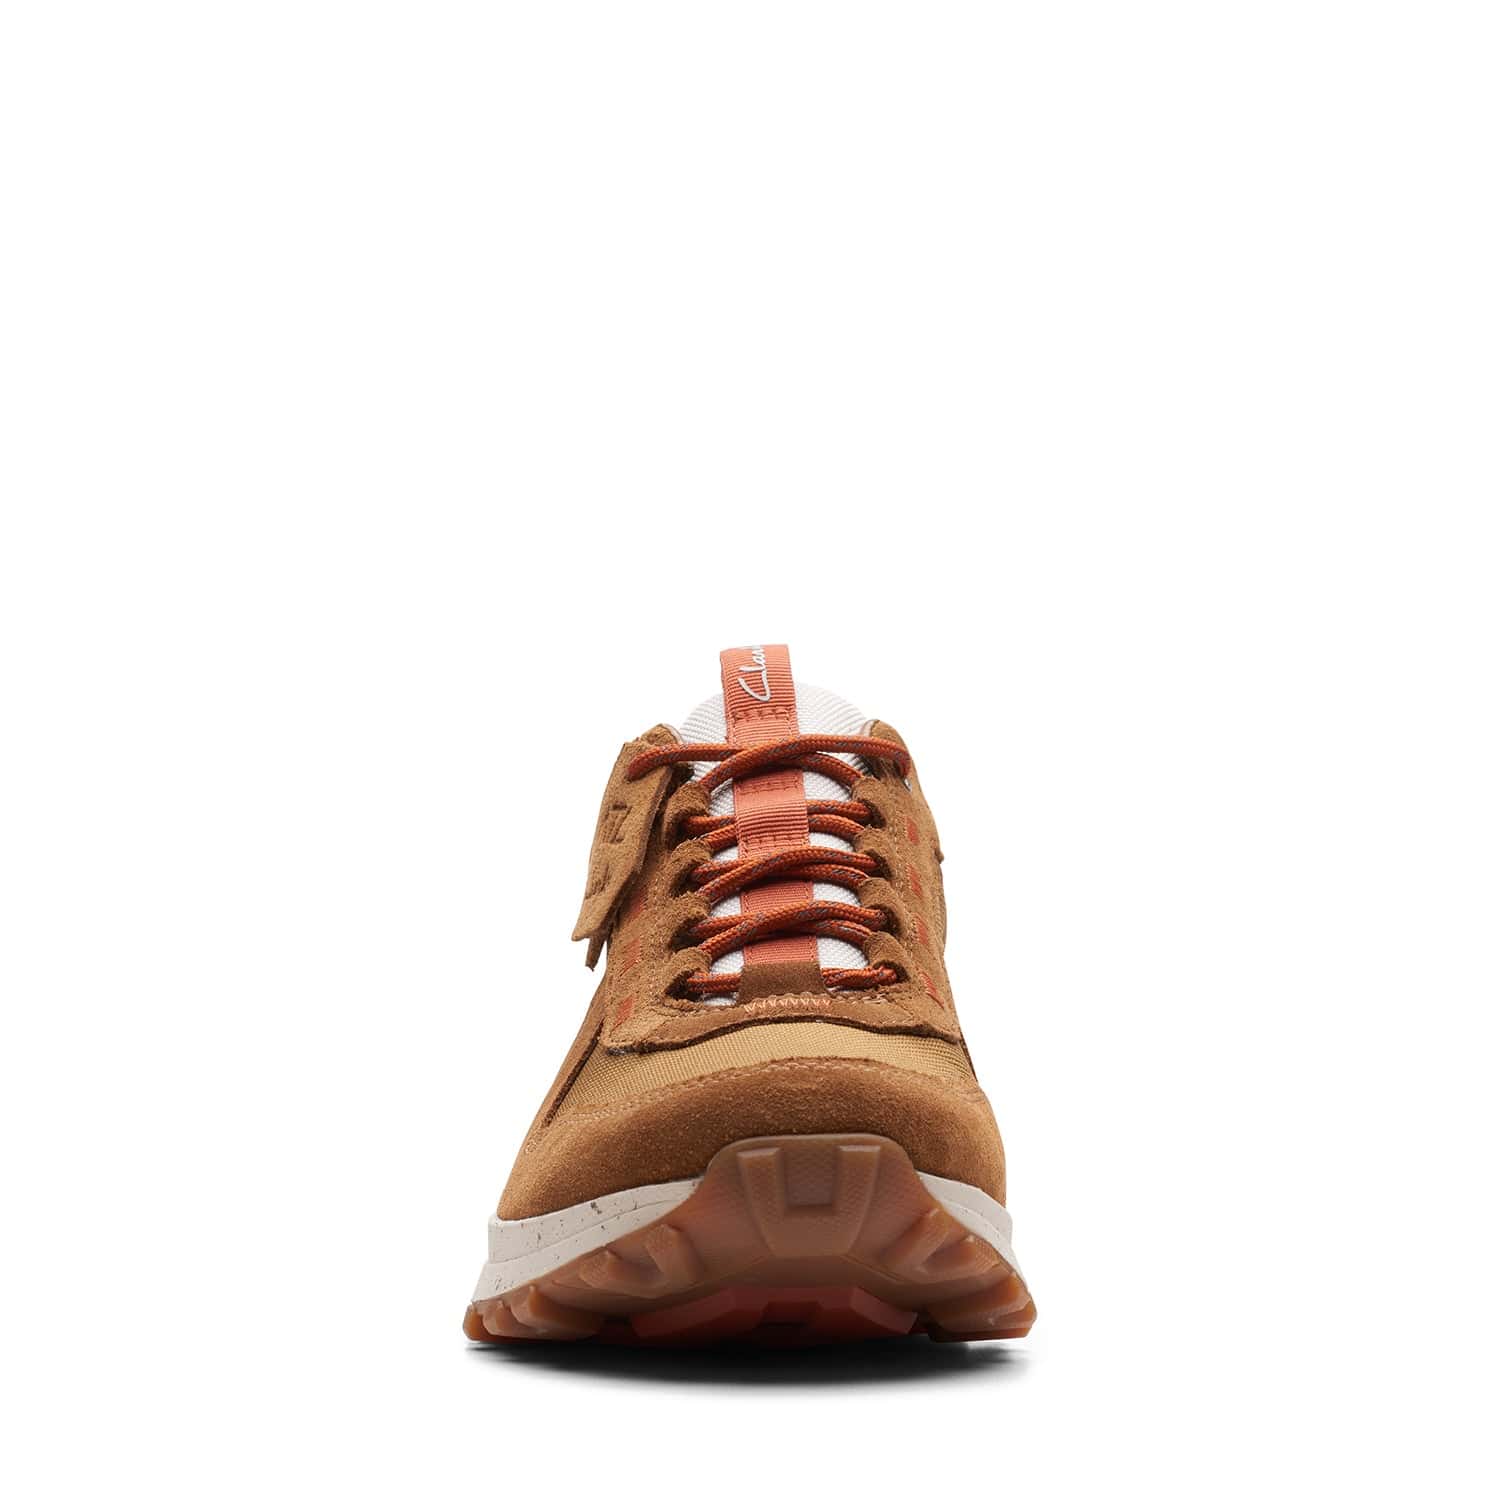 Clarks Atltrekwalkwp - Shoes - Cognac Combi - 261657367 - G Width (Standard Fit)